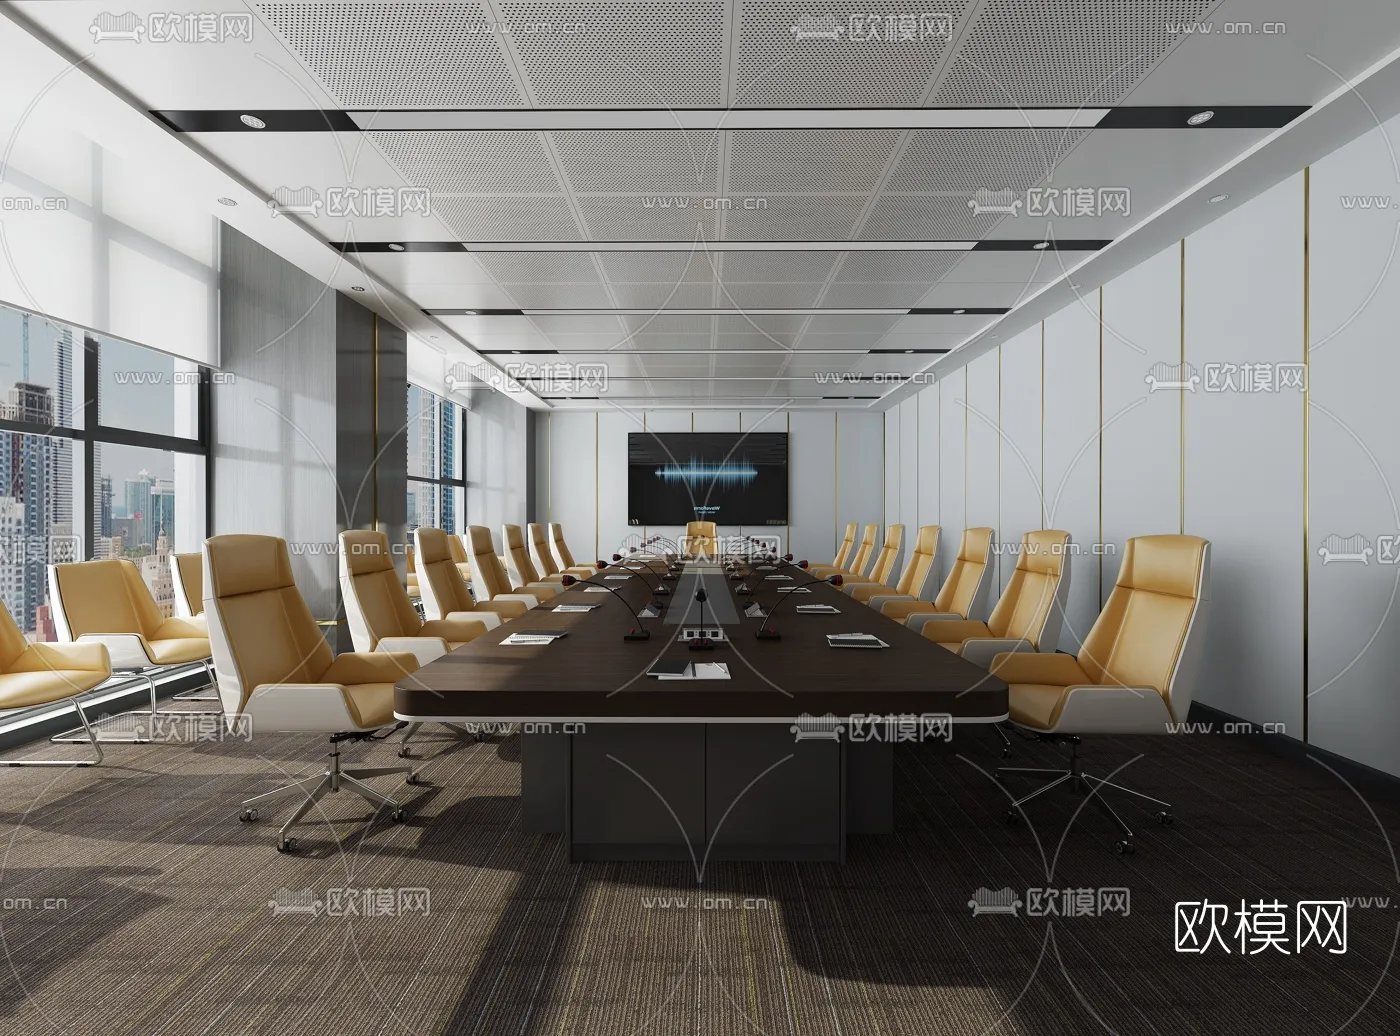 Meeting Room 3D Scenes – 1474